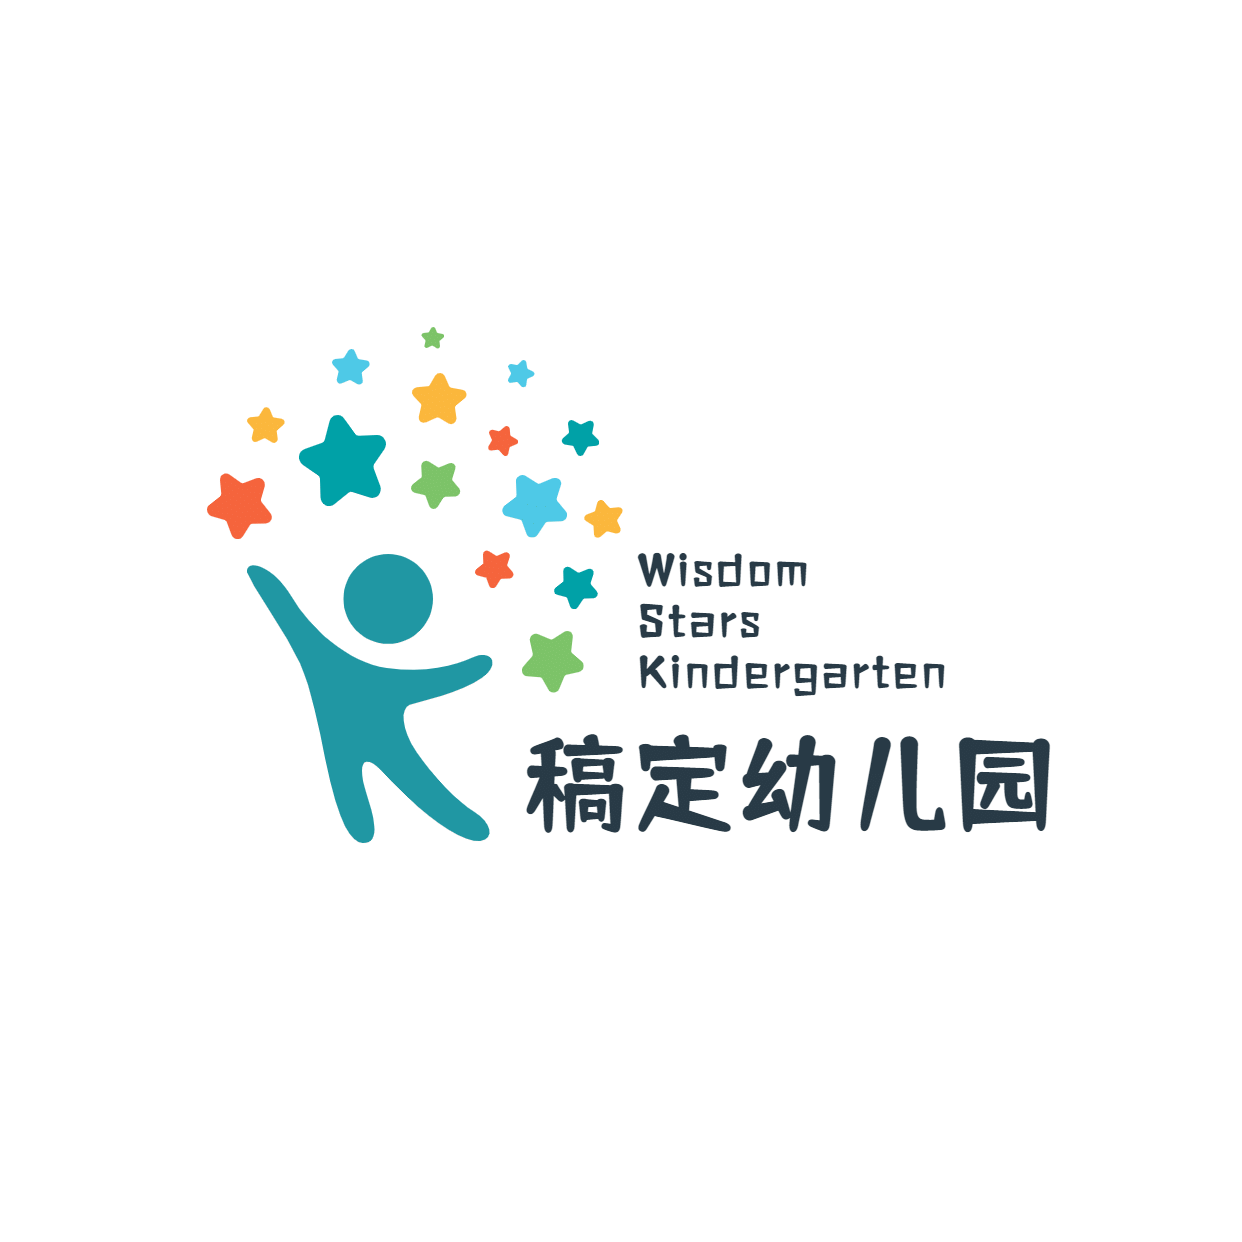 教育培训幼儿园约清新logo预览效果